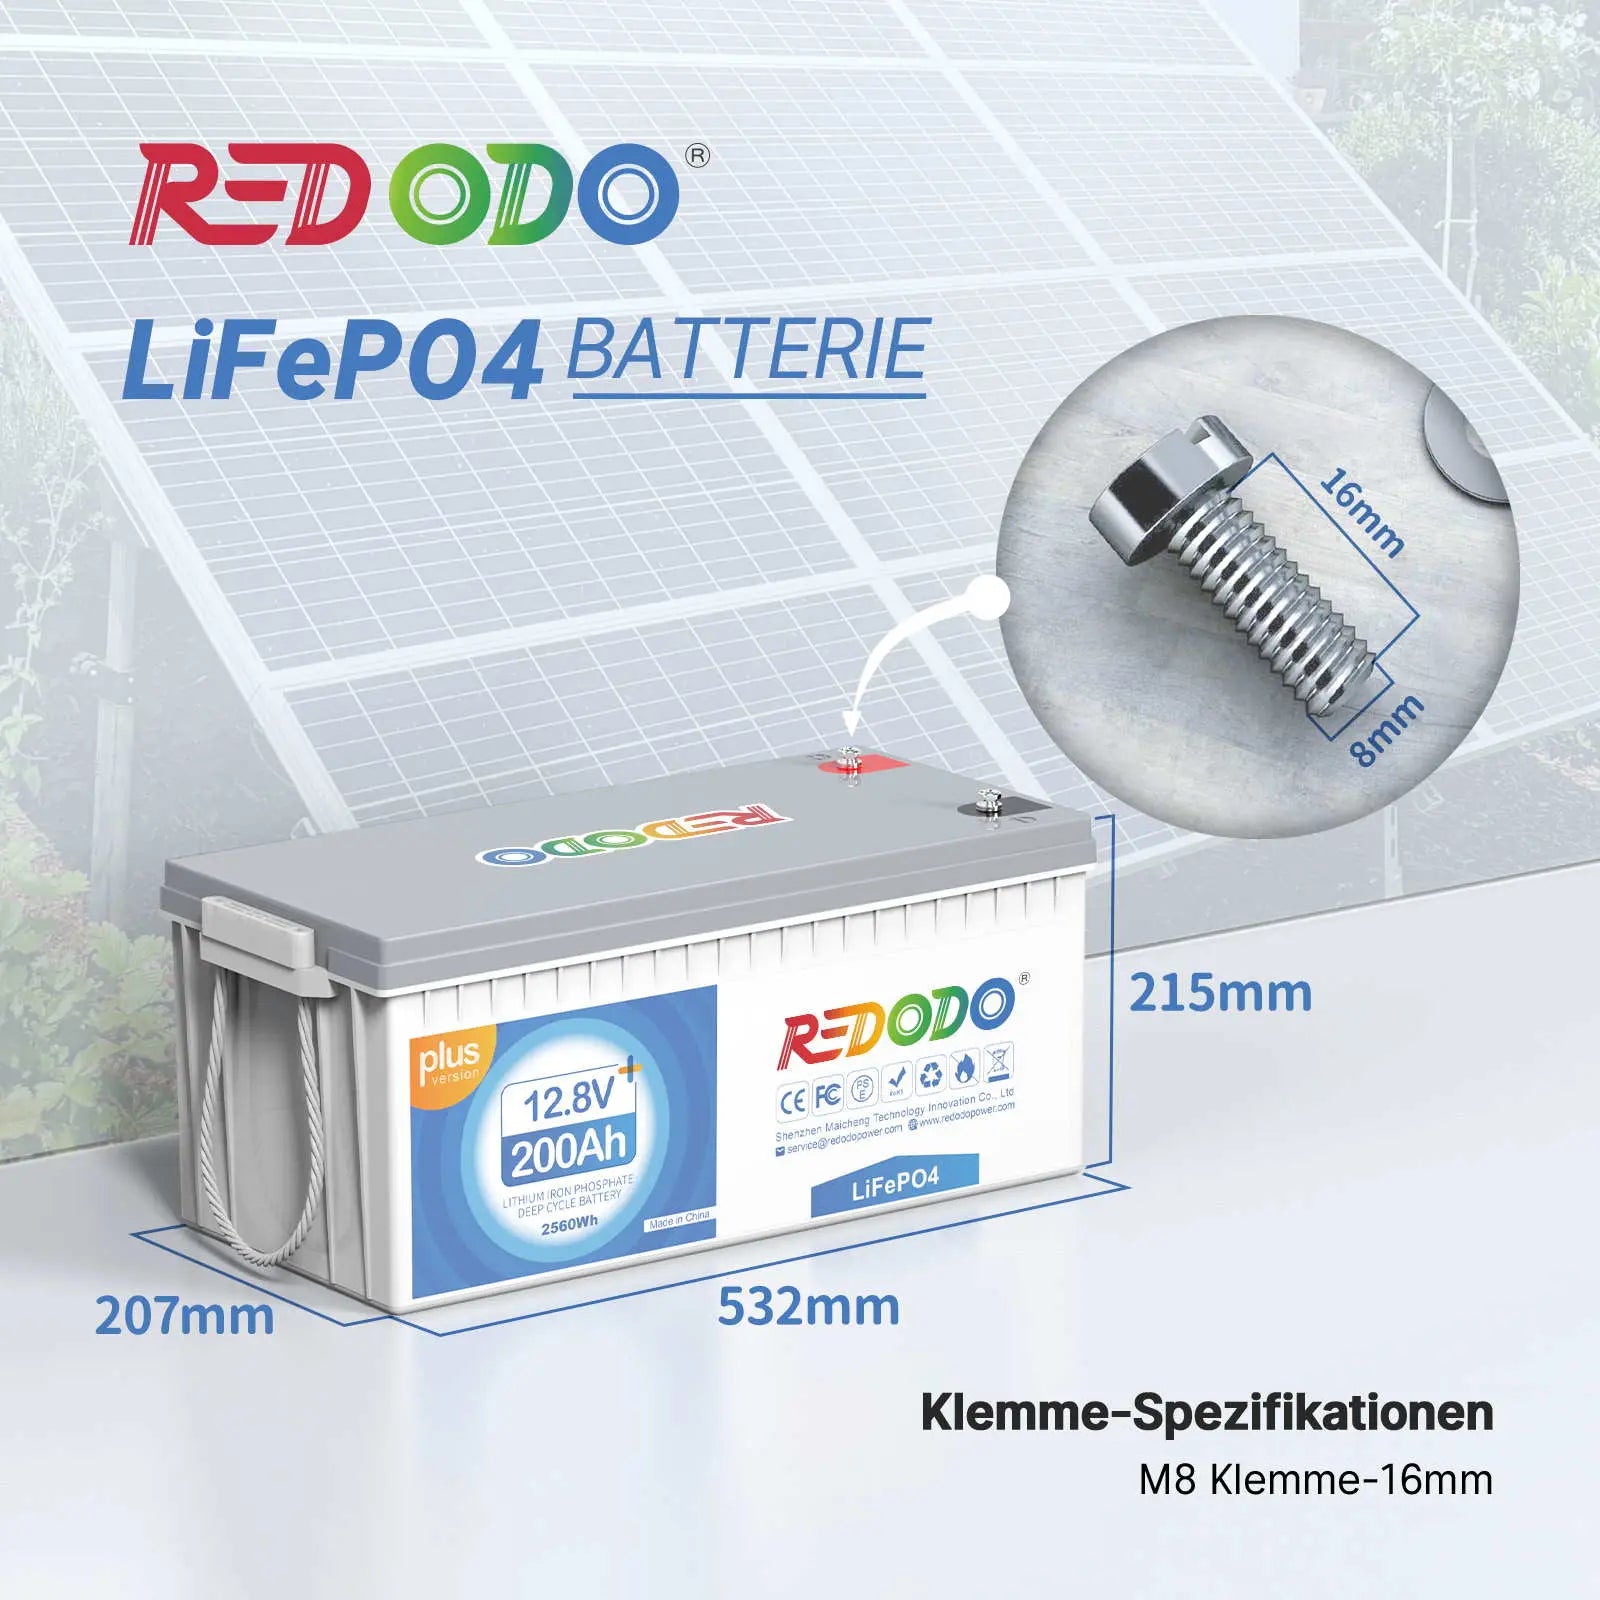 Batteria Redodo LiFePO4 200Ah Plus 12V | 2,56 kWh e 2,56 kW